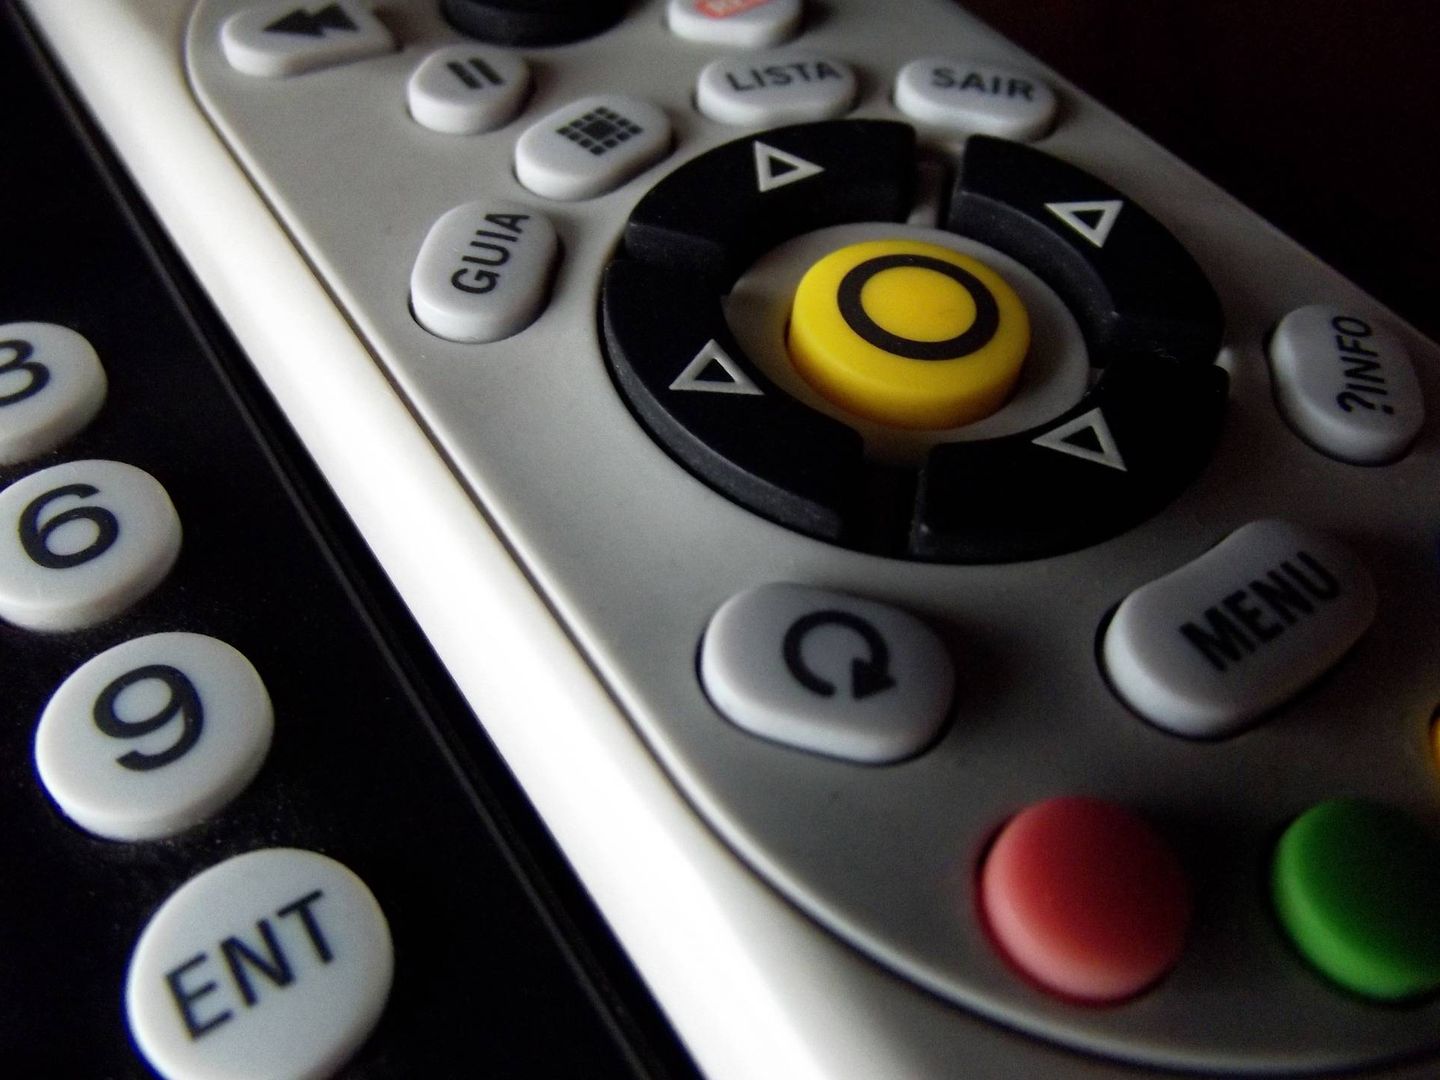 Color, brillo, contraste… Desde el mando a distancia se puede calibrar el televisor para ver series y películas